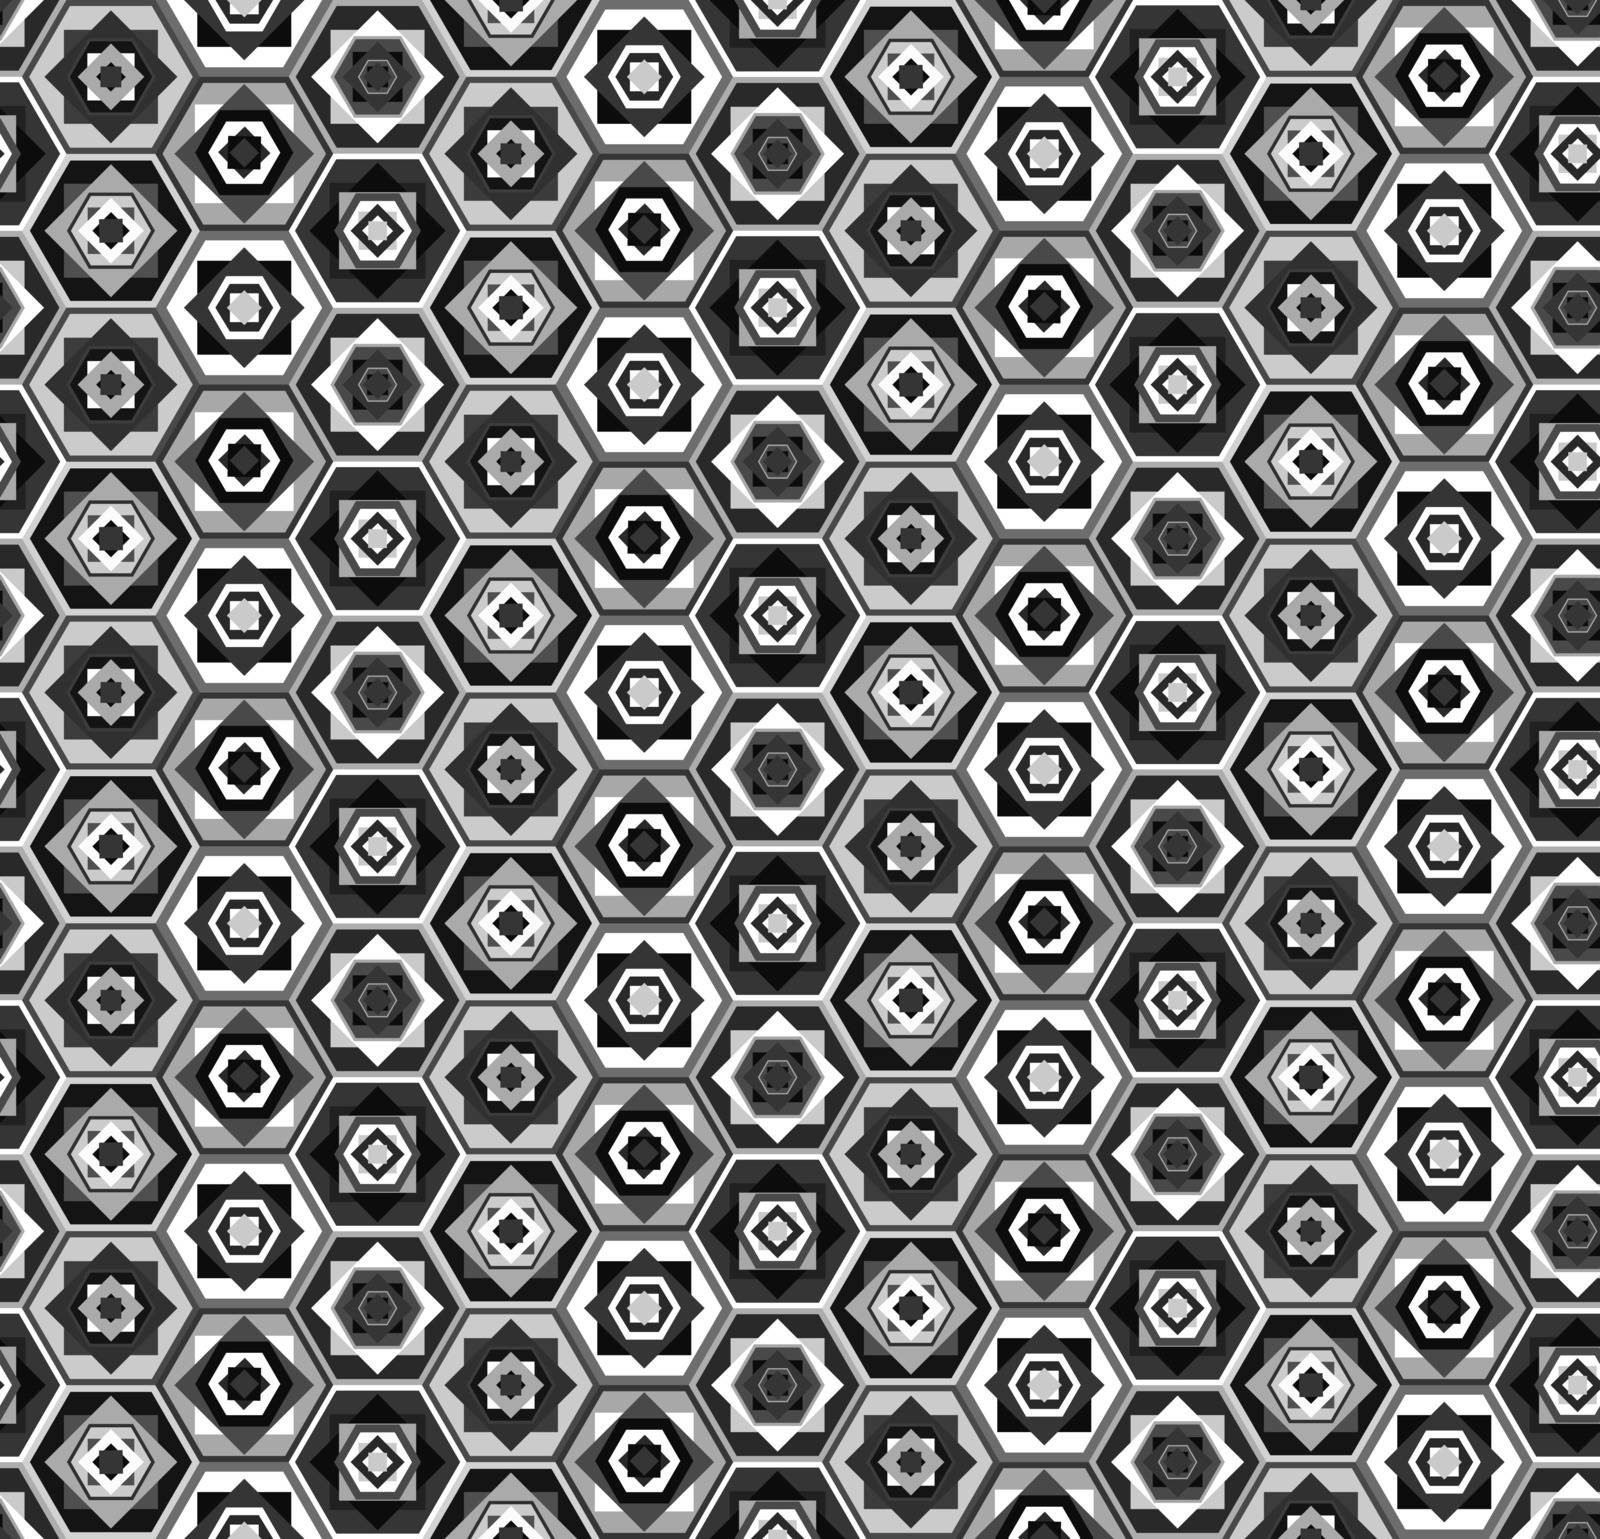 Gray and white hexagons pattern by tatahnka